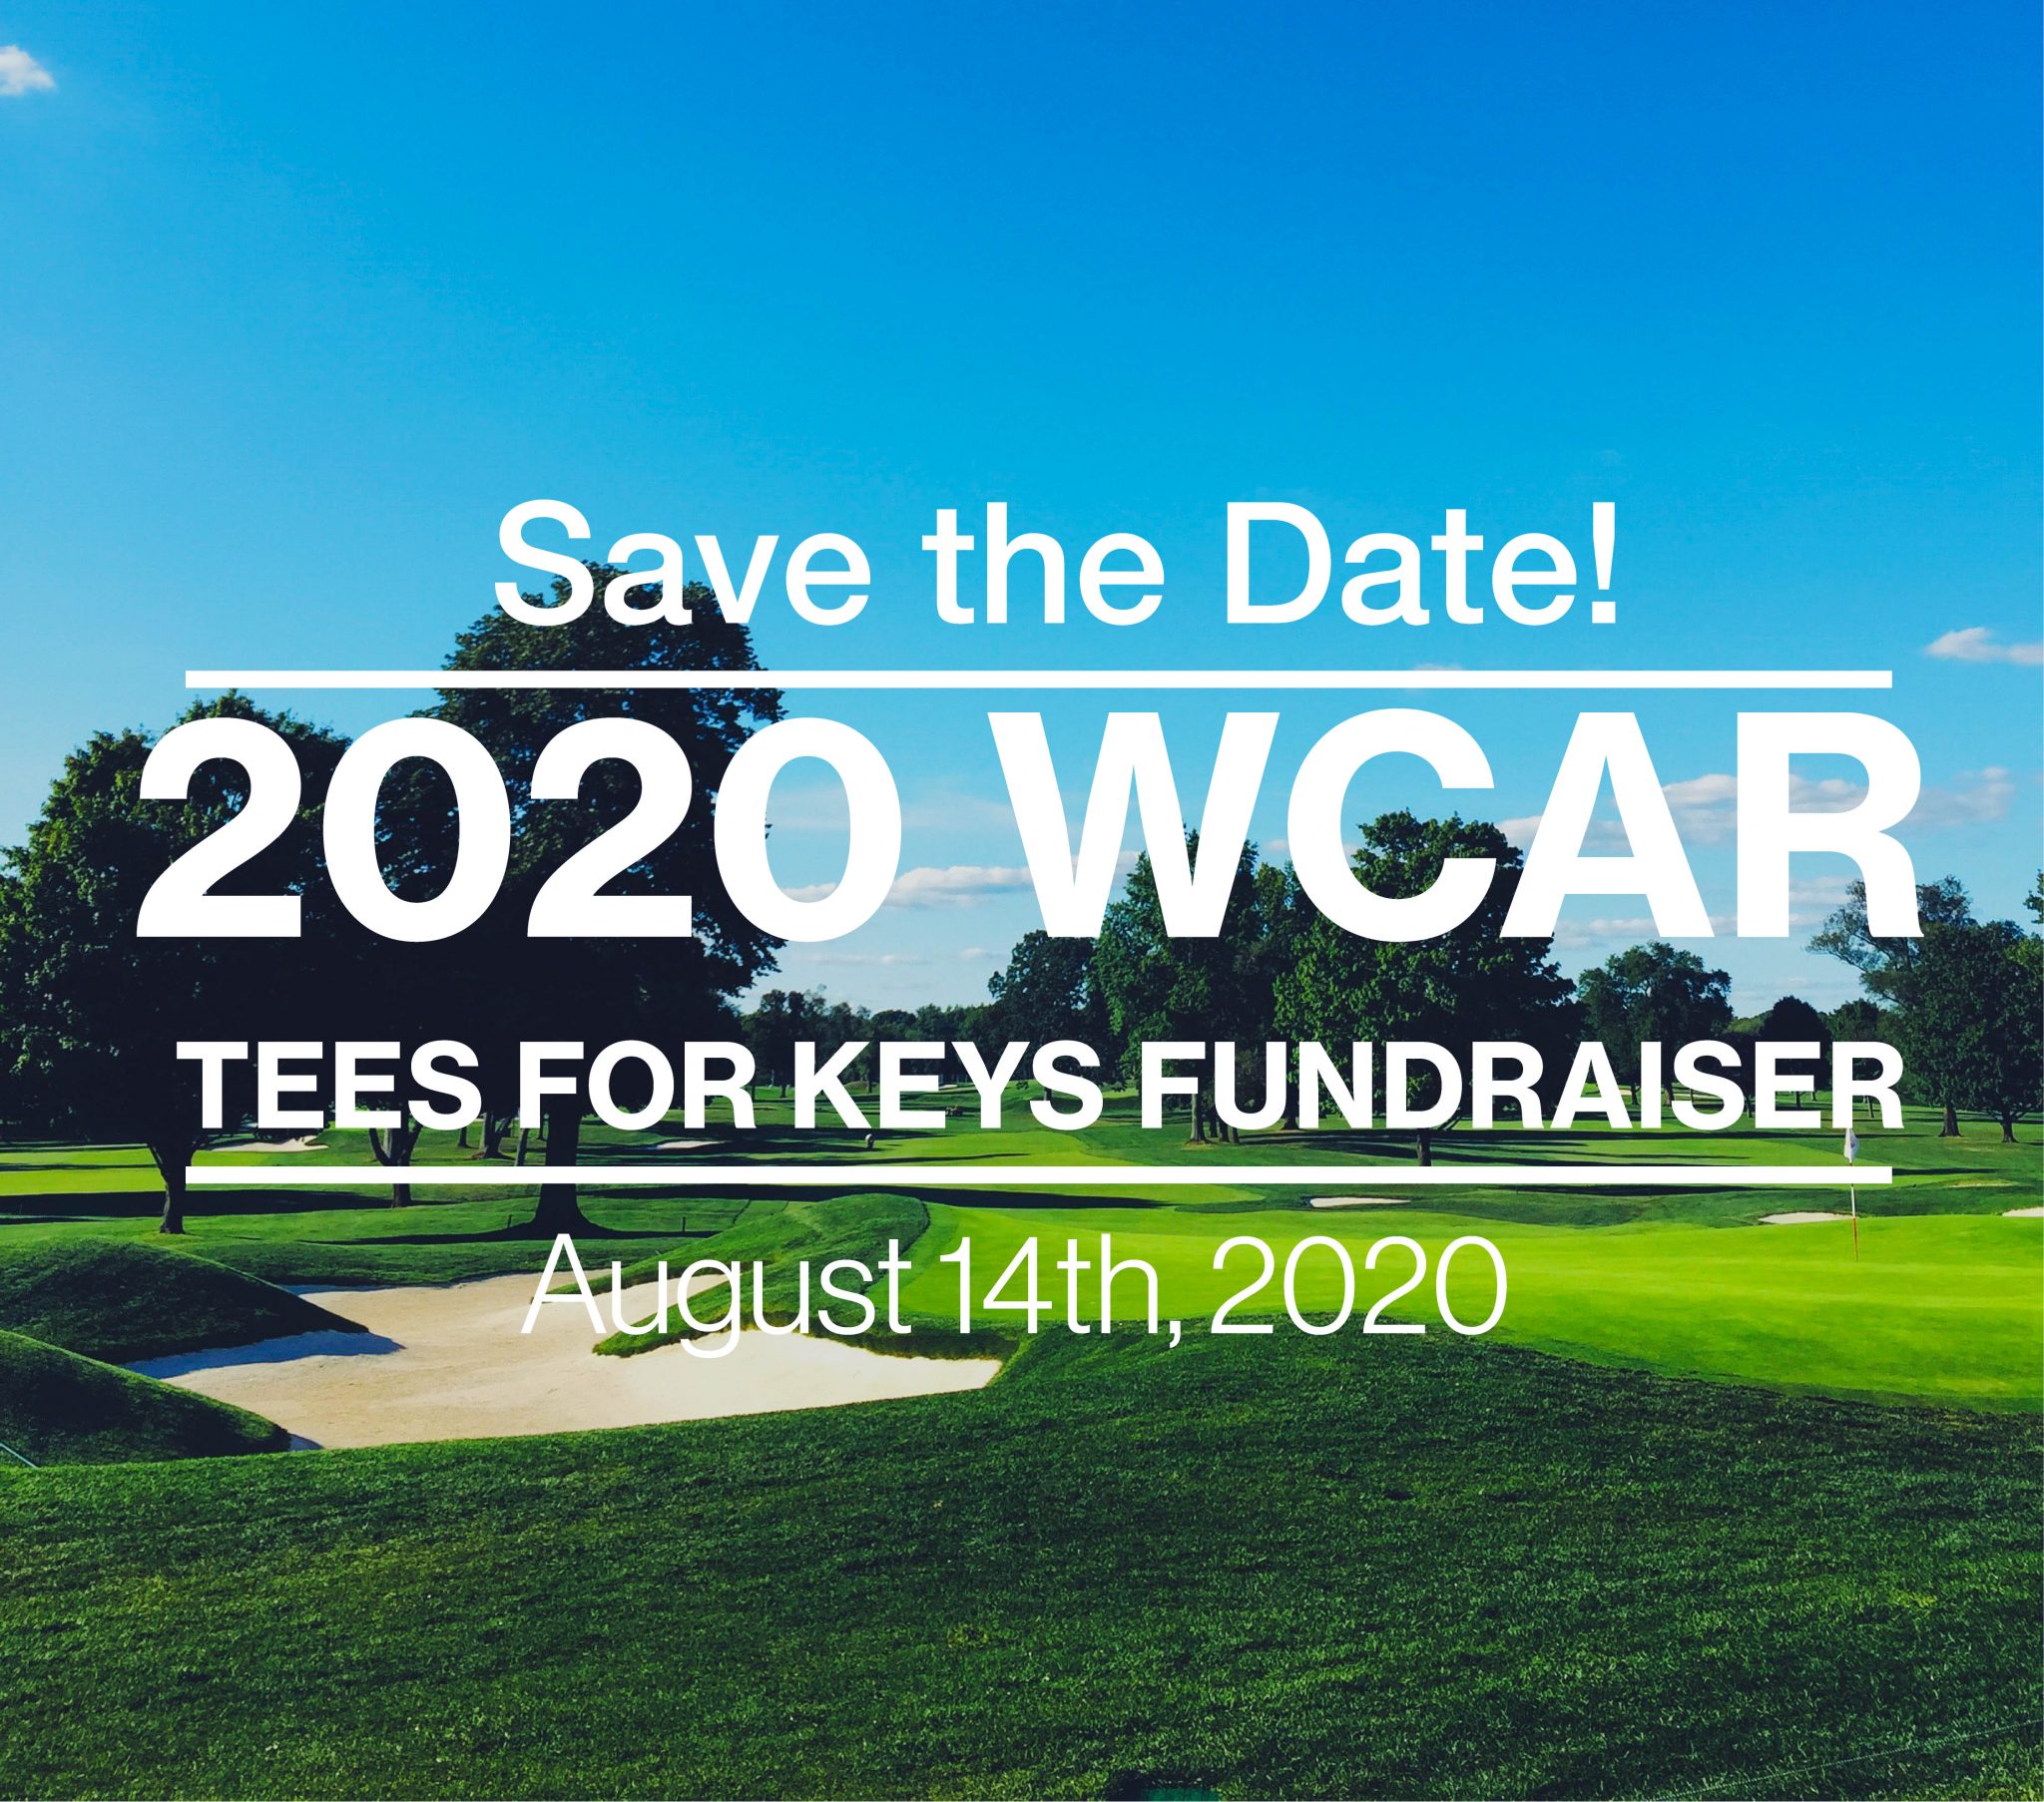 2020 WCAR Tees for Keys Fundraiser